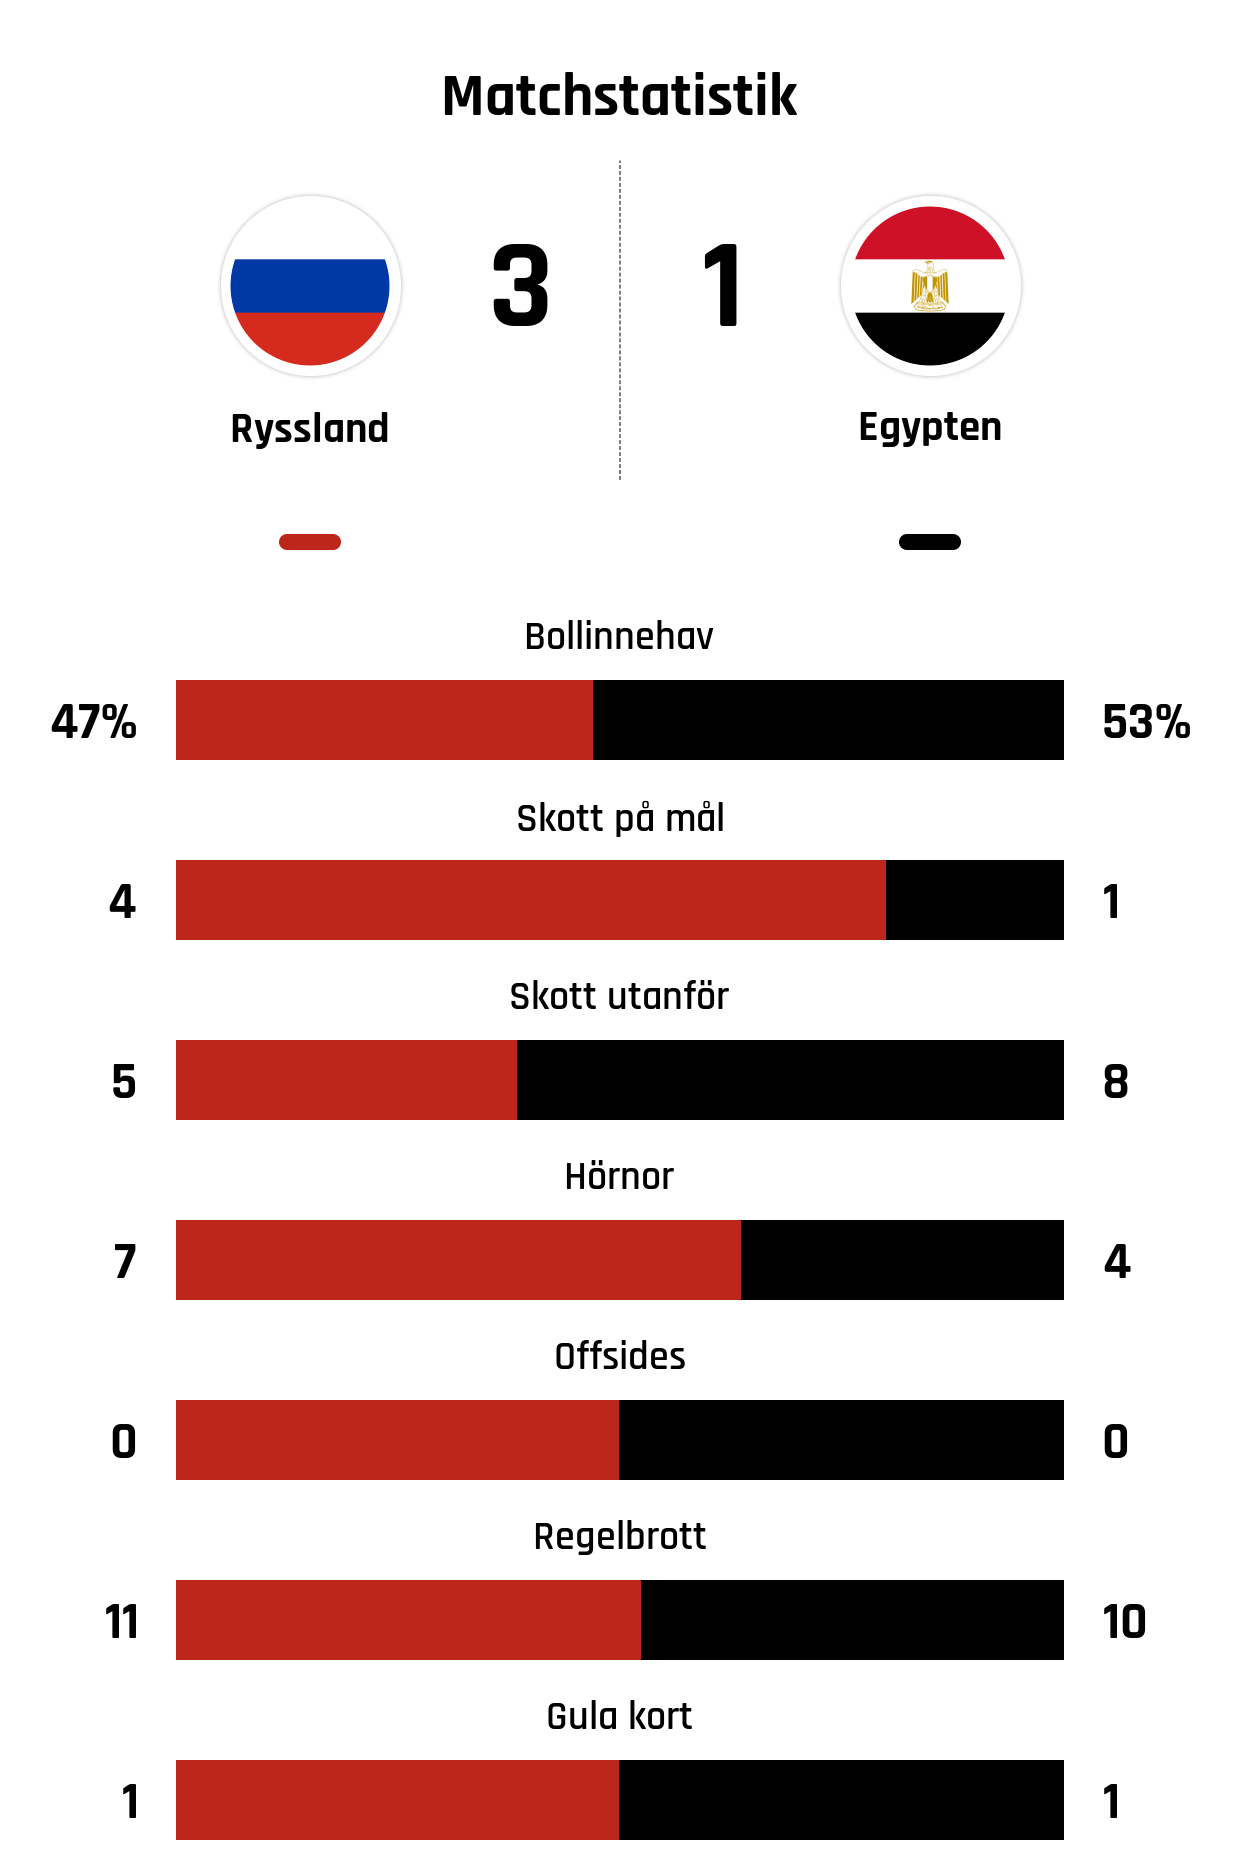 Bollinnehav 47%-53%
Skott på mål 4-1
Skott utanför 5-8
Hörnor 7-4
Offsides 0-0
Regelbrott 11-10
Gula kort 1-1